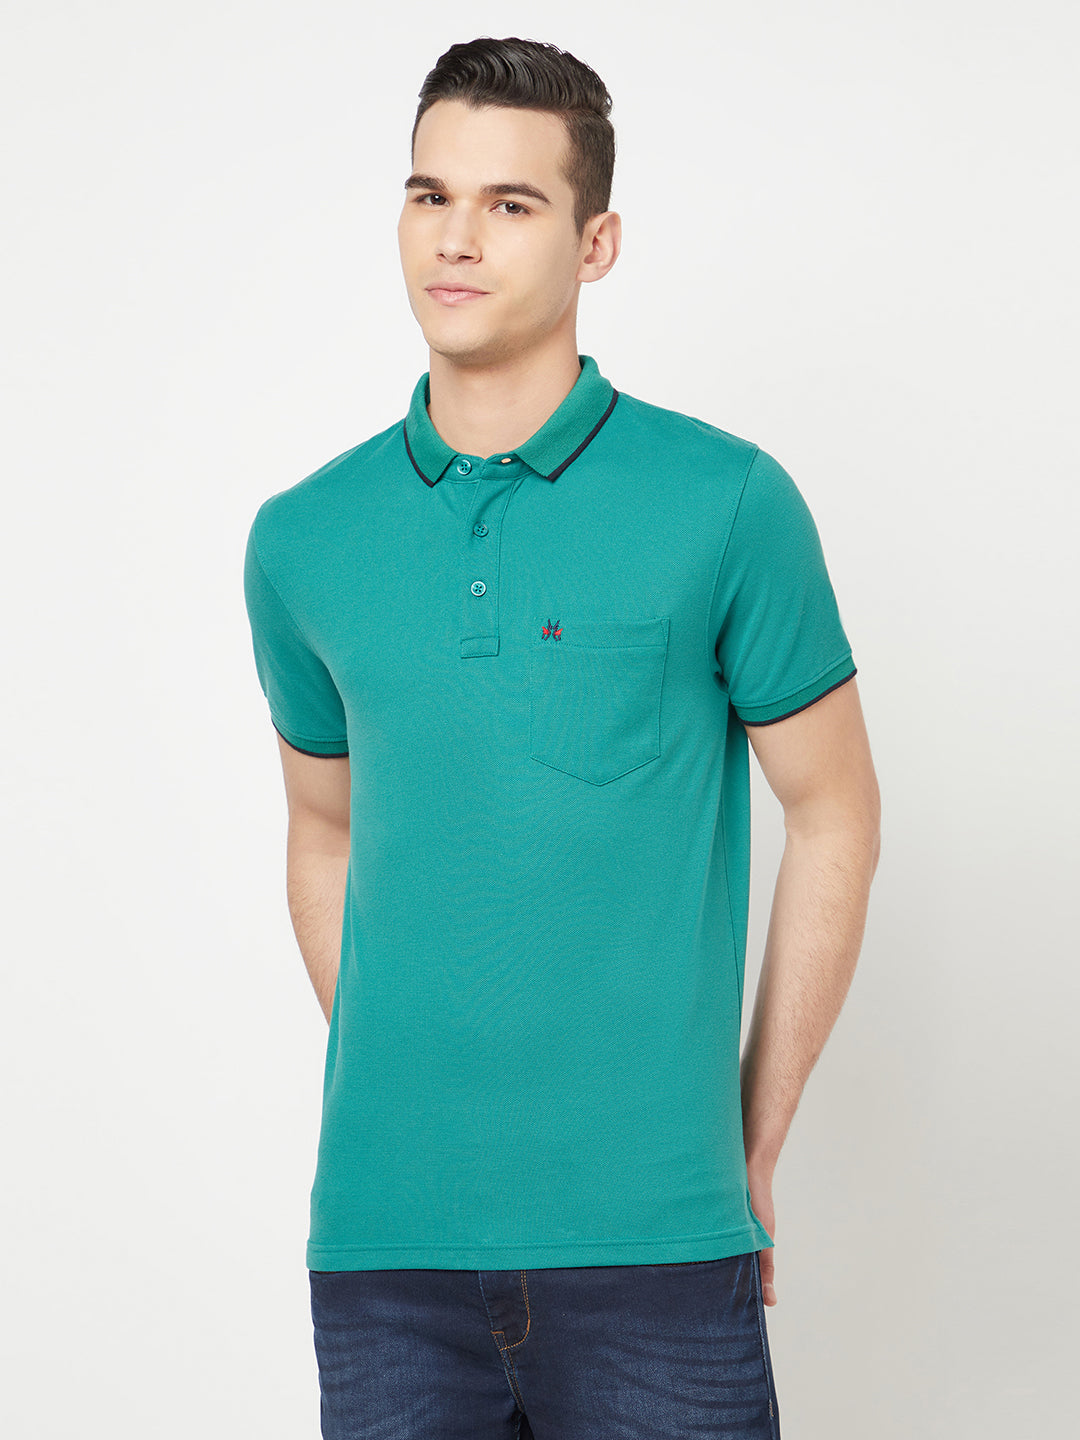 Green Polo T-Shirt - Men T-Shirts